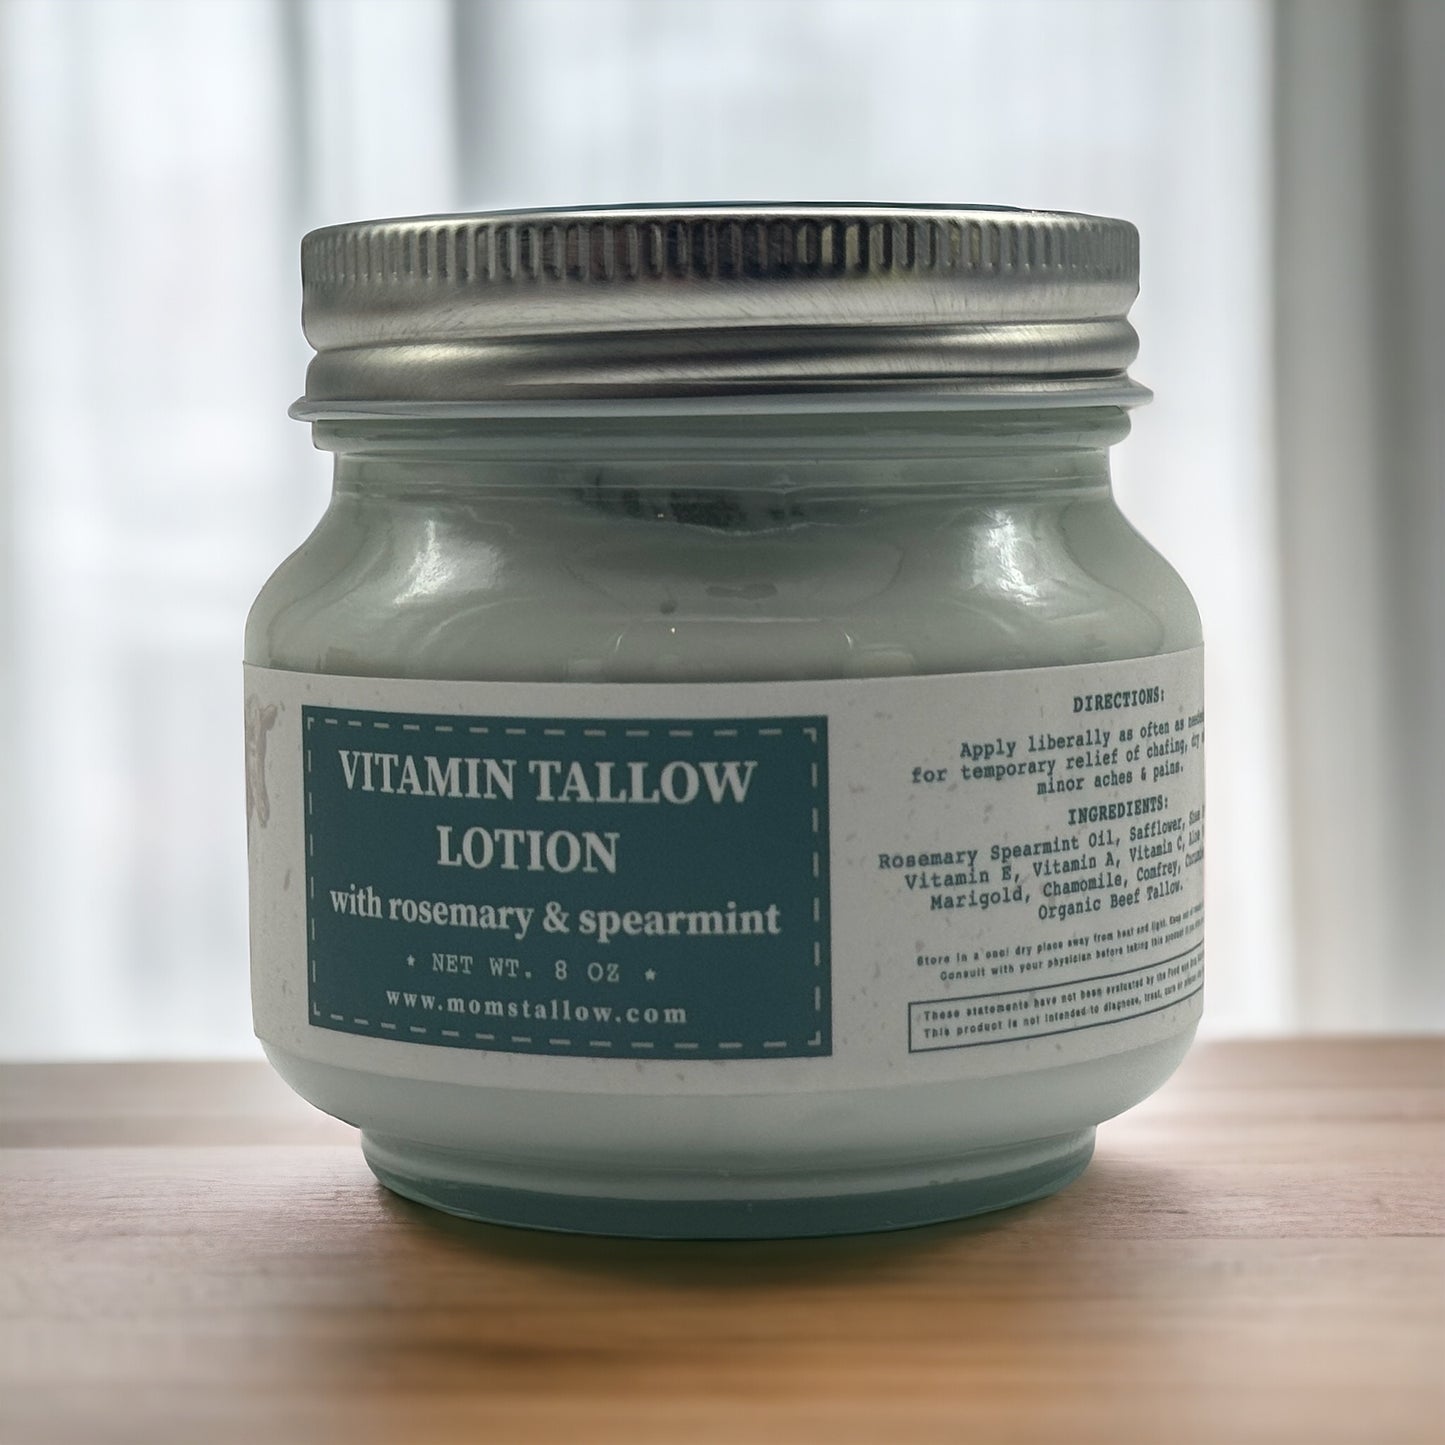 Mom’s Vitamin Tallow Lotion- (Rosemary & Spearmint)